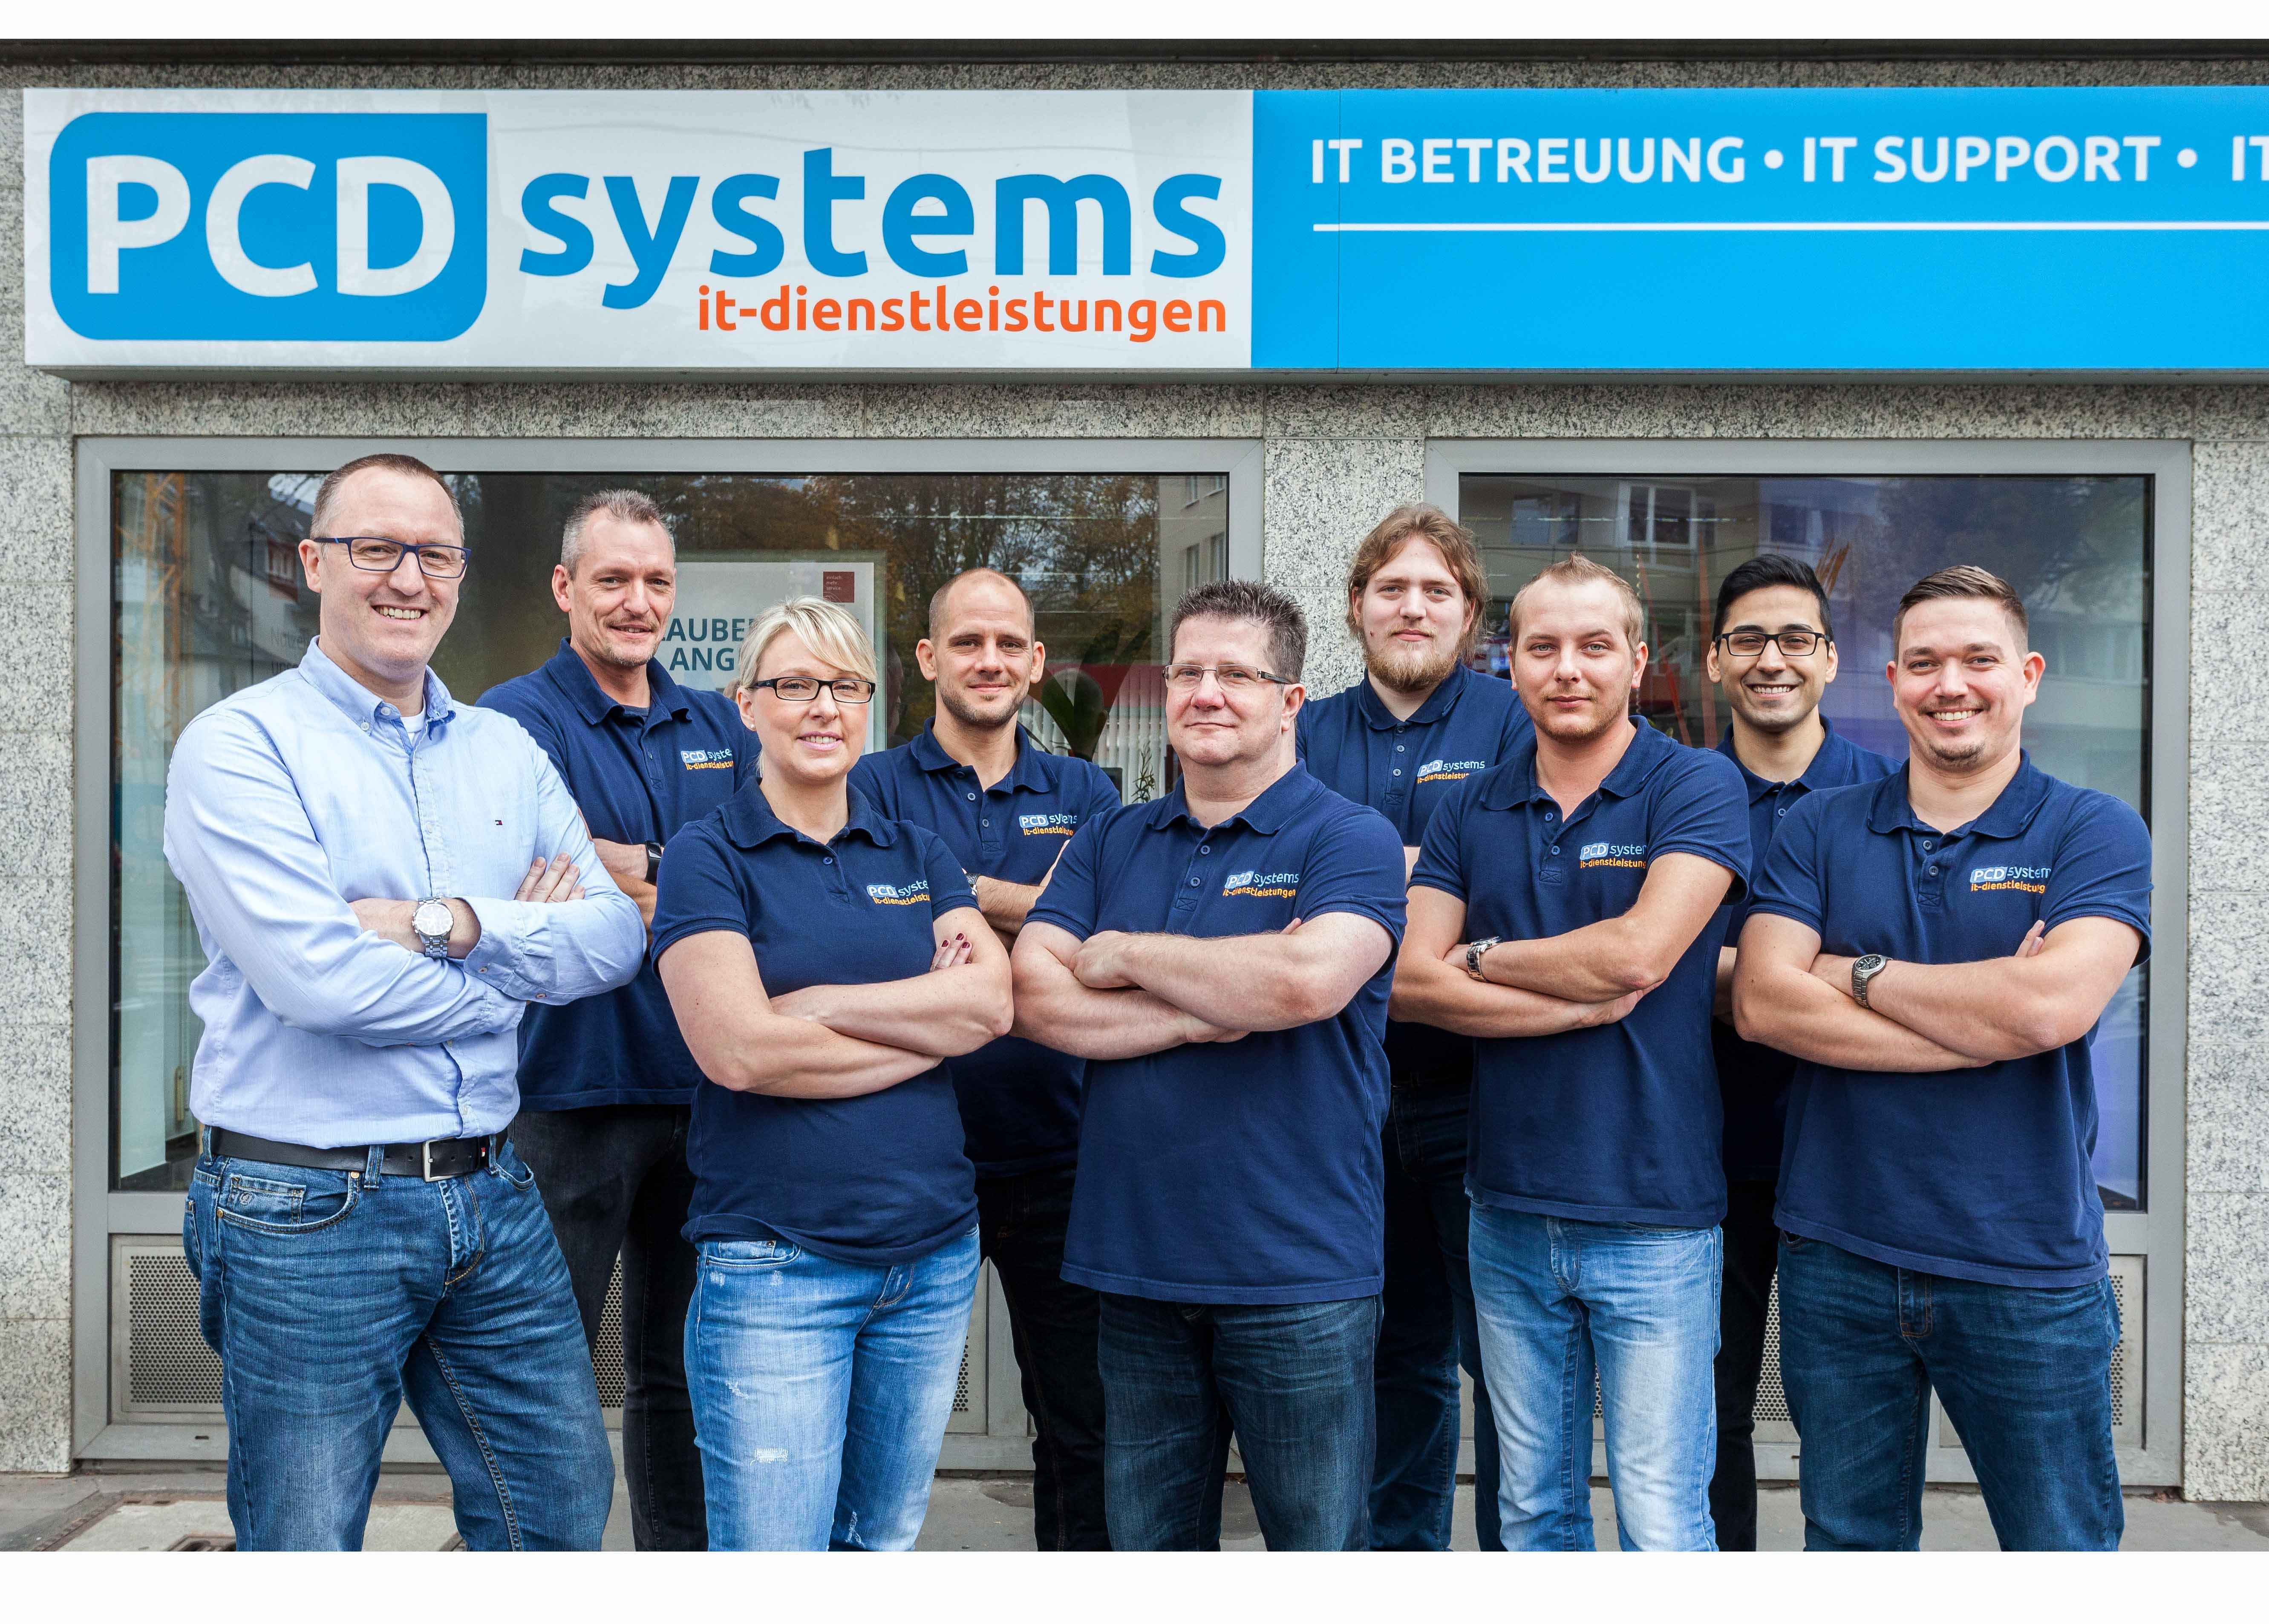 PCD systems - IT Dienstleistungen für Unternehmen, Widdersdorfer Straße 236-240 in Köln